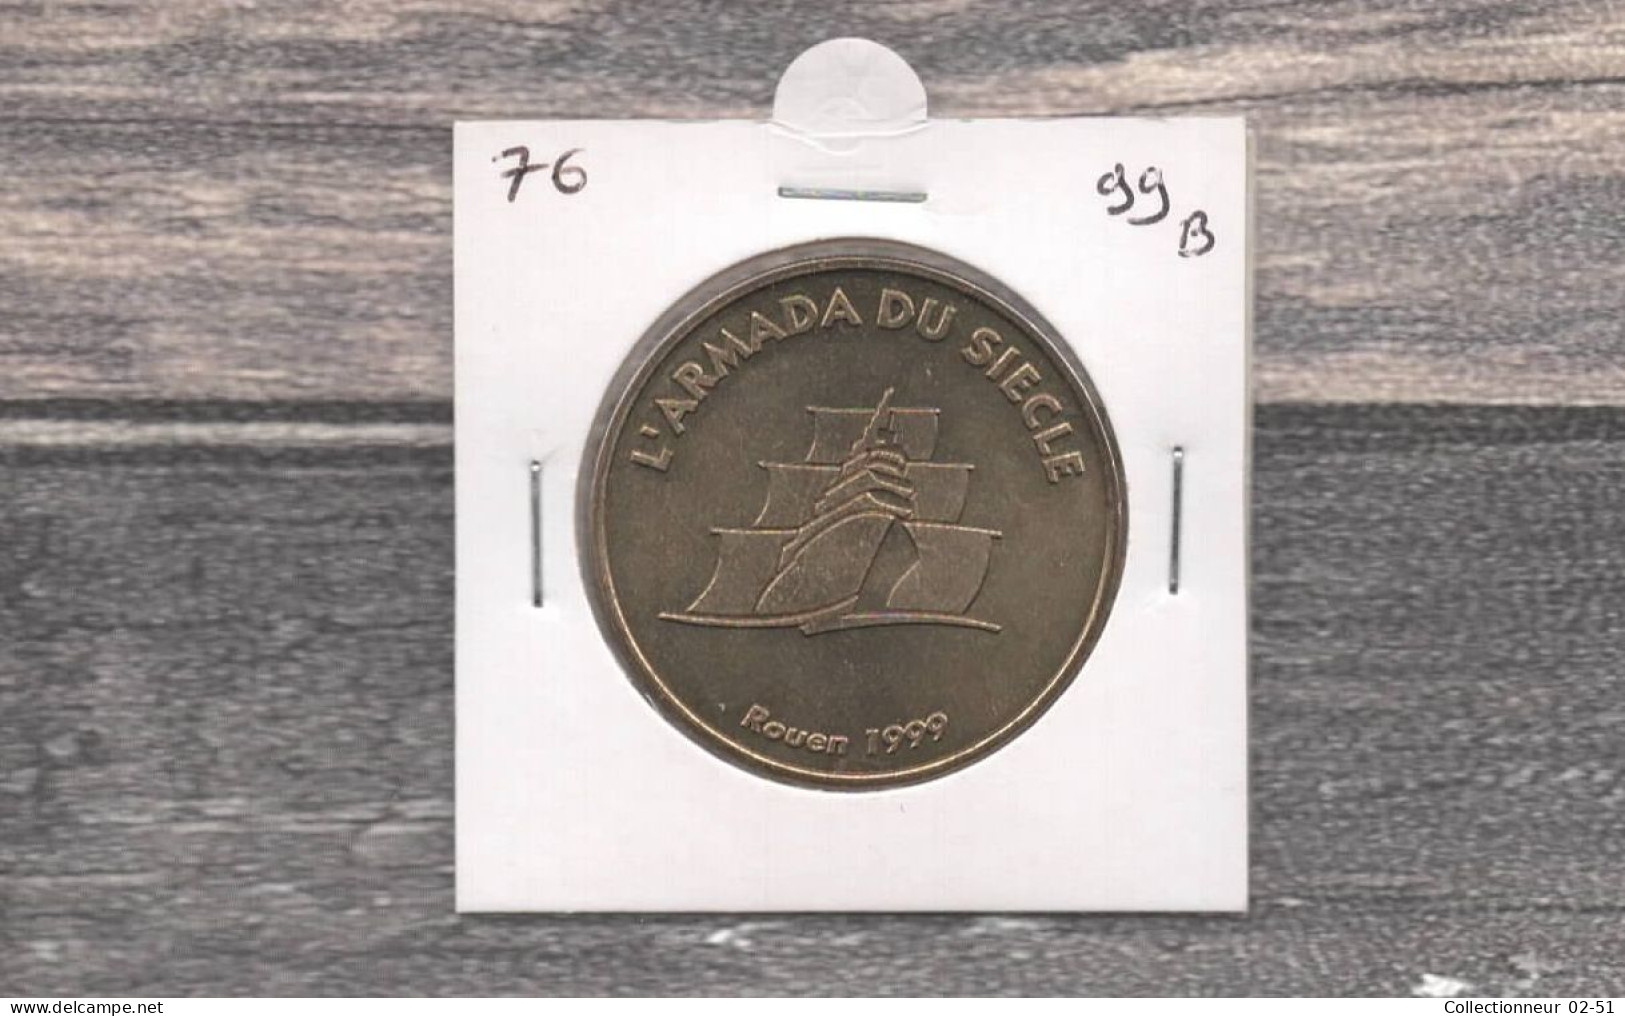 Monnaie De Paris : L'Armada Du Siècle - 1999 - Sin Fecha